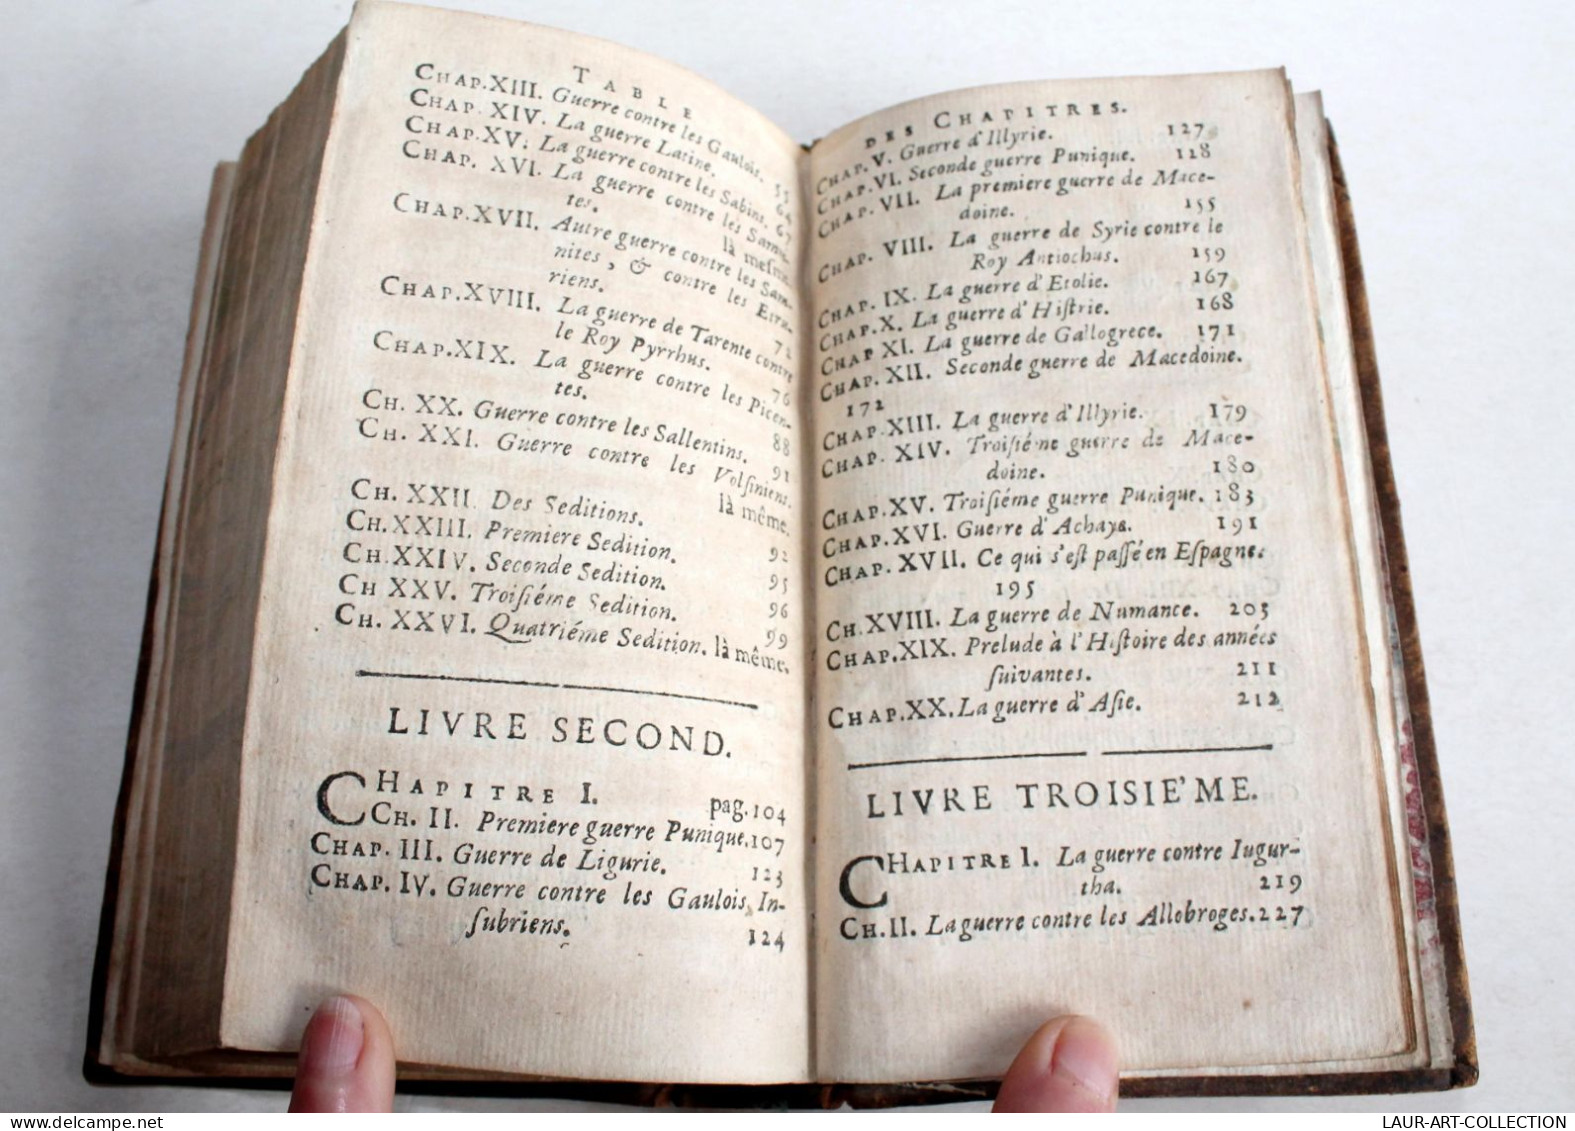 EPITOME DE L'HISTOIRE ROMAINE EN QUATRE LIVRES Par LUCIUS ANN. FLORUS 1687 MOLIN / ANCIEN LIVRE DU XVIIe SIECLE (2204.7) - Before 18th Century